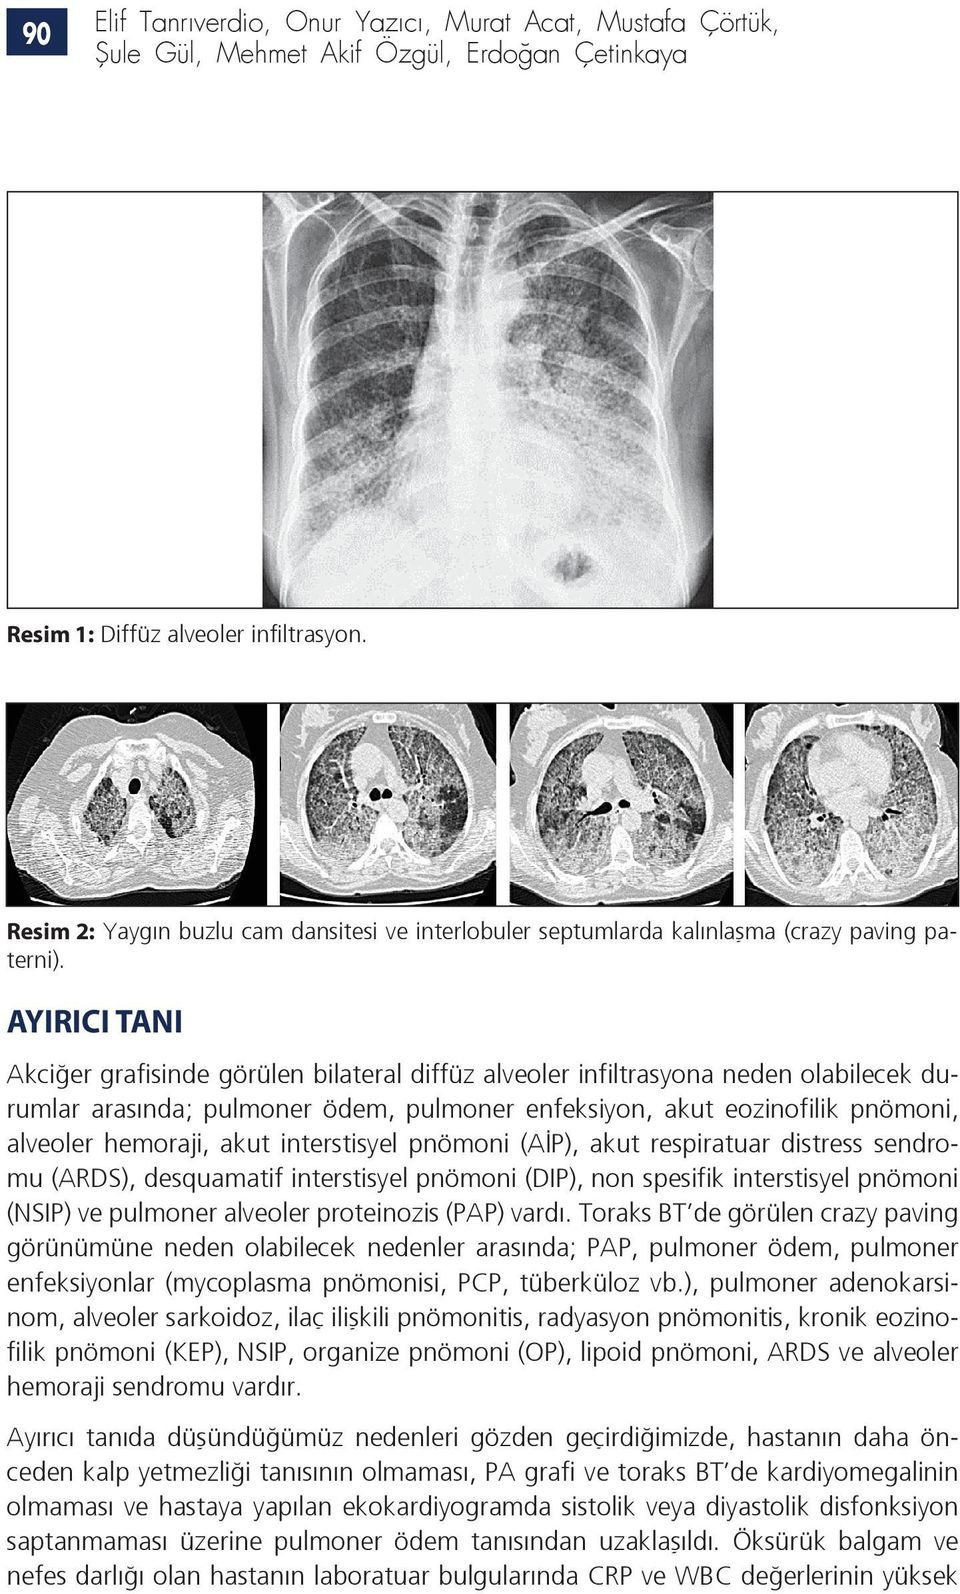 AYIRICI TANI Akciğer grafisinde görülen bilateral diffüz alveoler infiltrasyona neden olabilecek durumlar arasında; pulmoner ödem, pulmoner enfeksiyon, akut eozinofilik pnömoni, alveoler hemoraji,